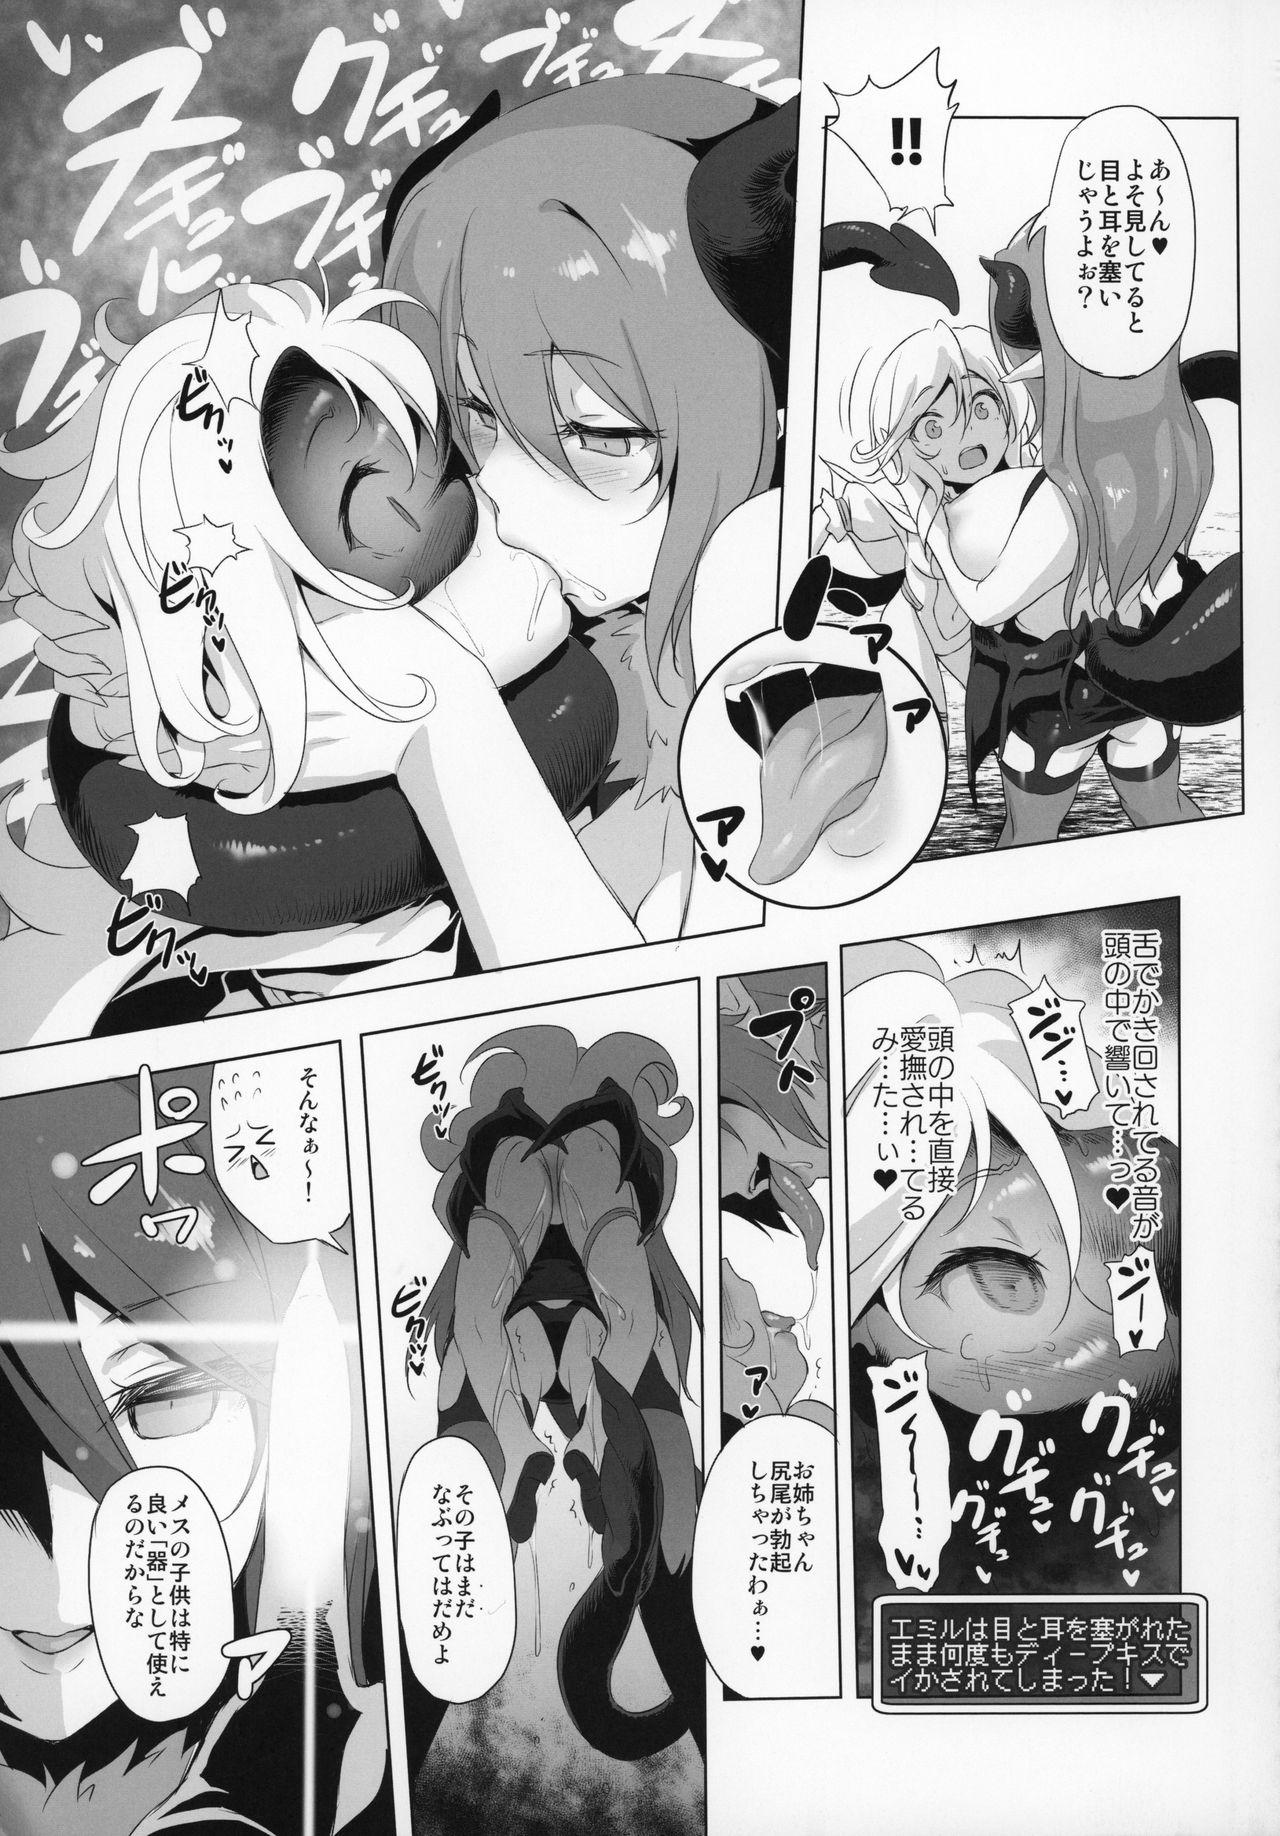 Hermana Makotoni Zannen desu ga Bouken no Sho 6 wa Kiete Shimaimashita. - Original Small Tits - Page 12